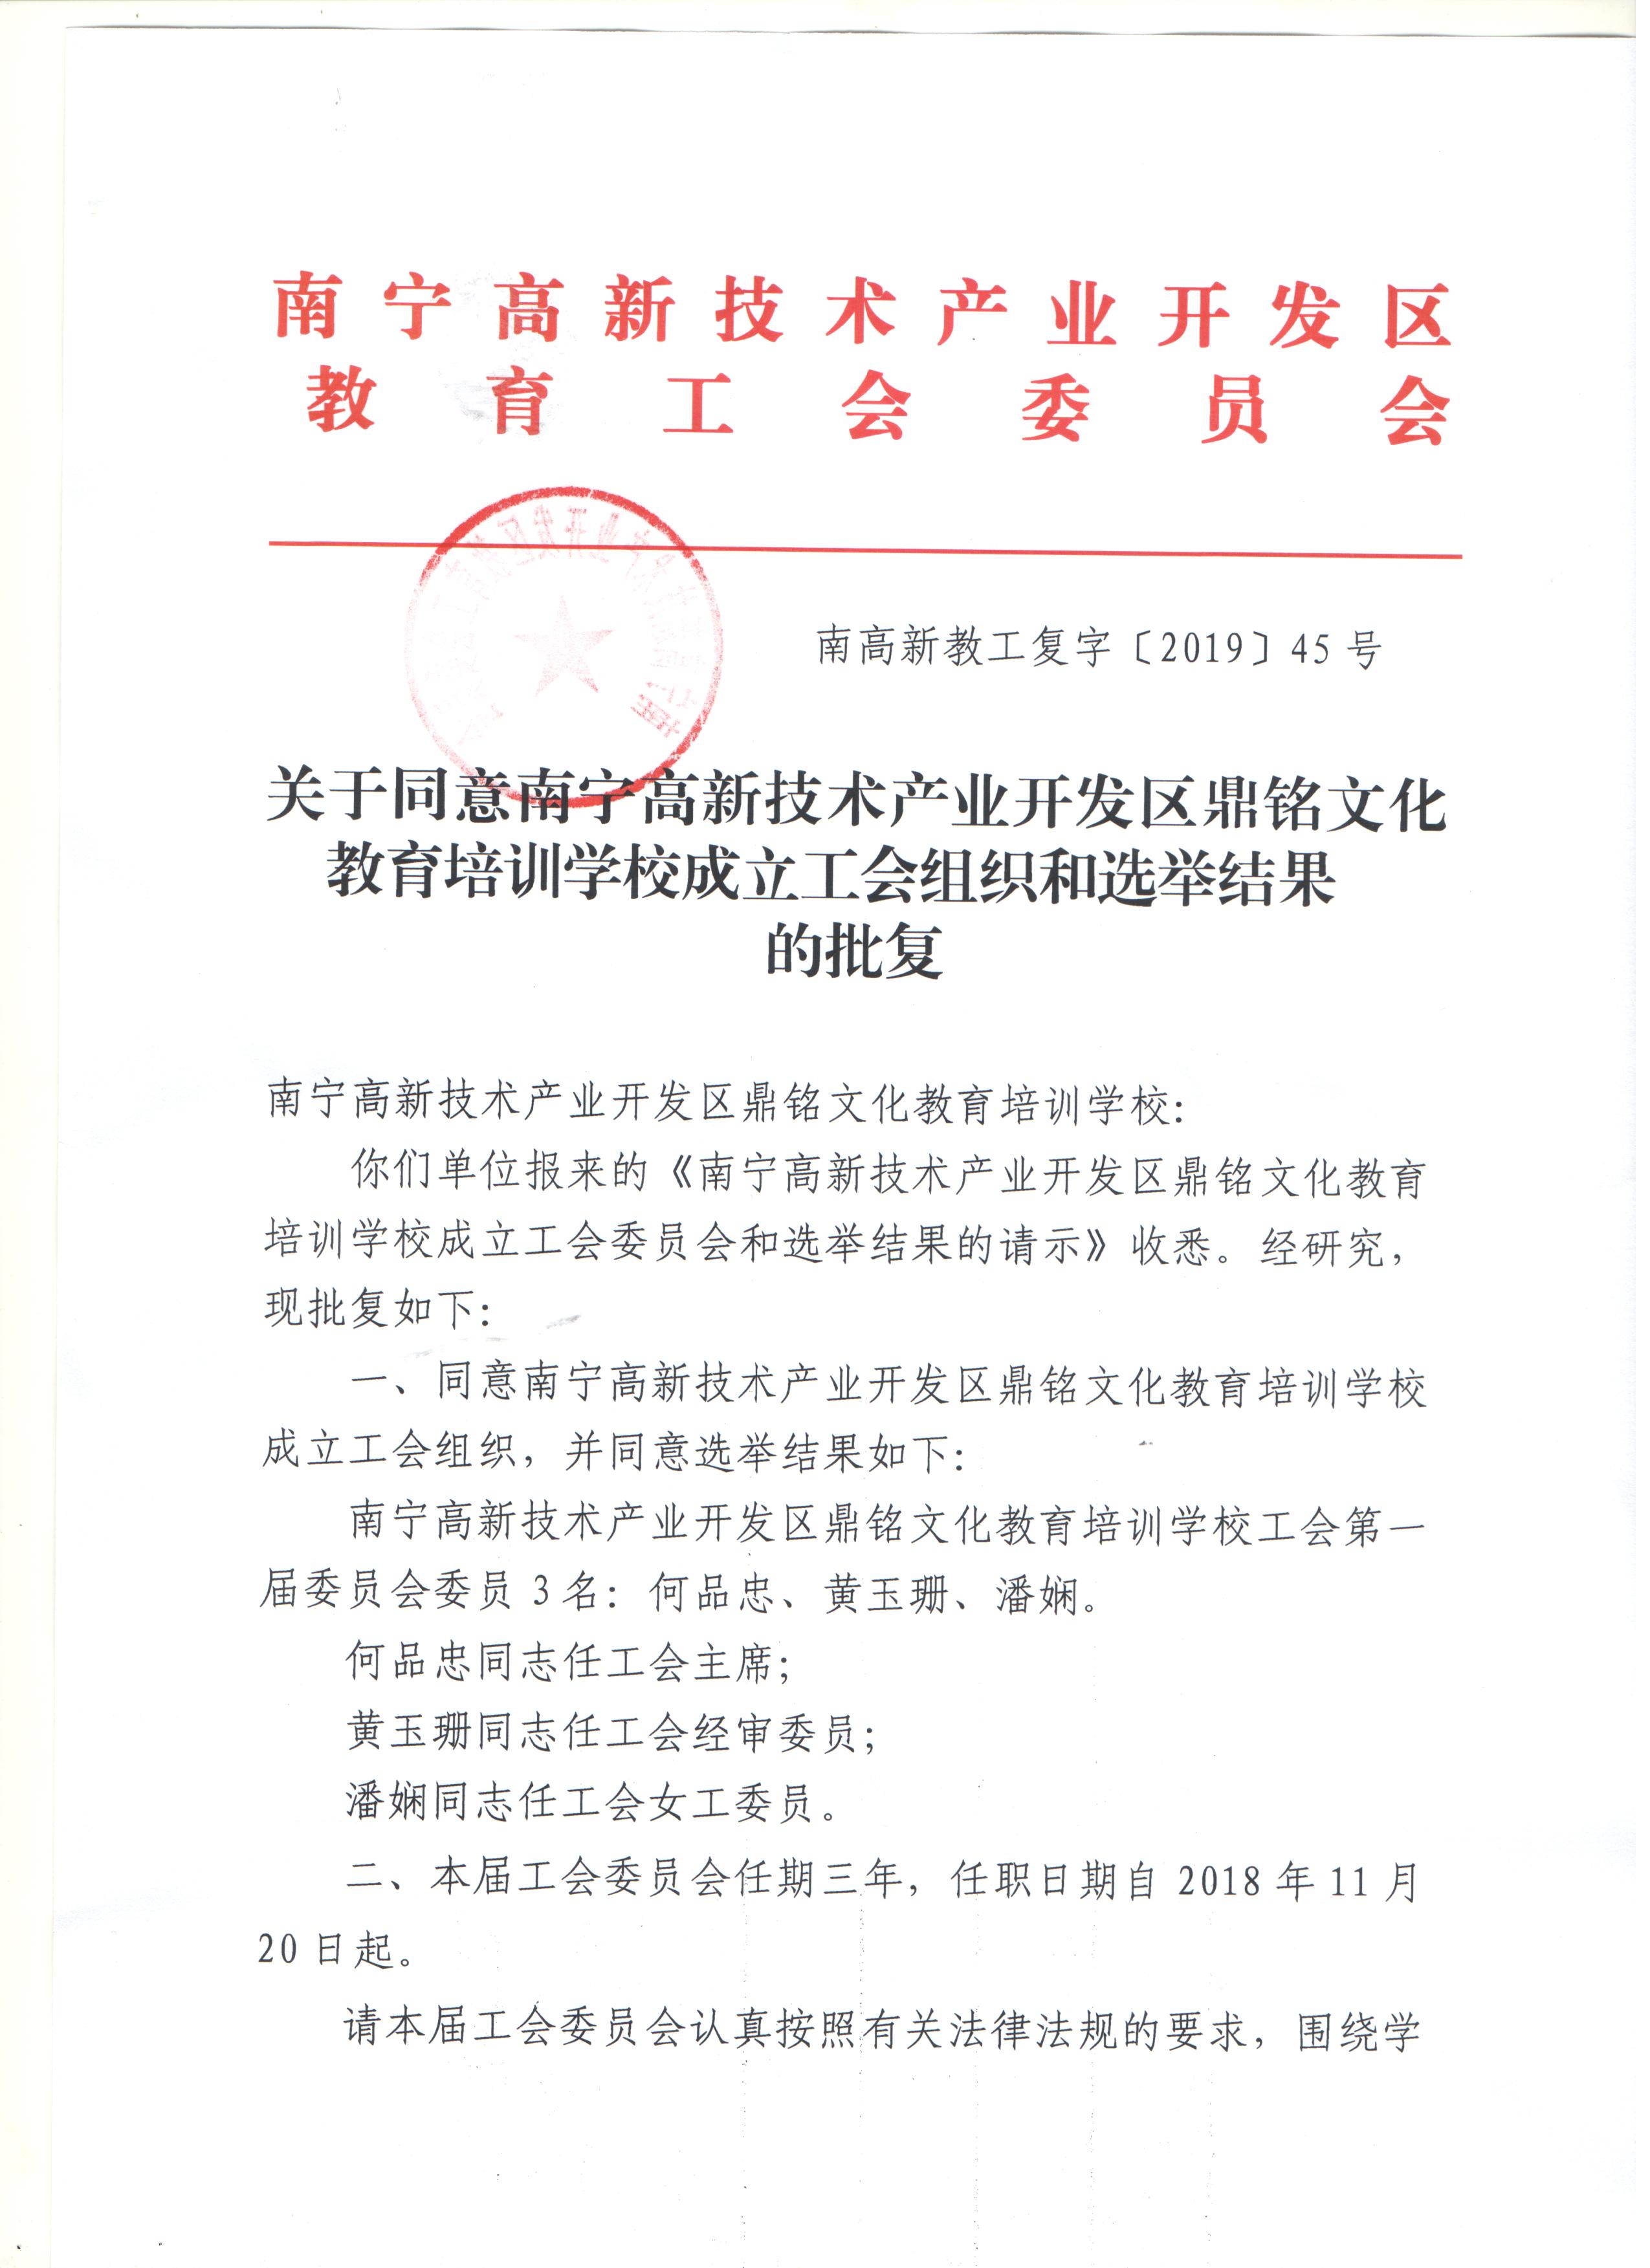 关于同意南宁高新技术产业开发区鼎铭文化教育培训学校成立工会组织和选举结果的批复